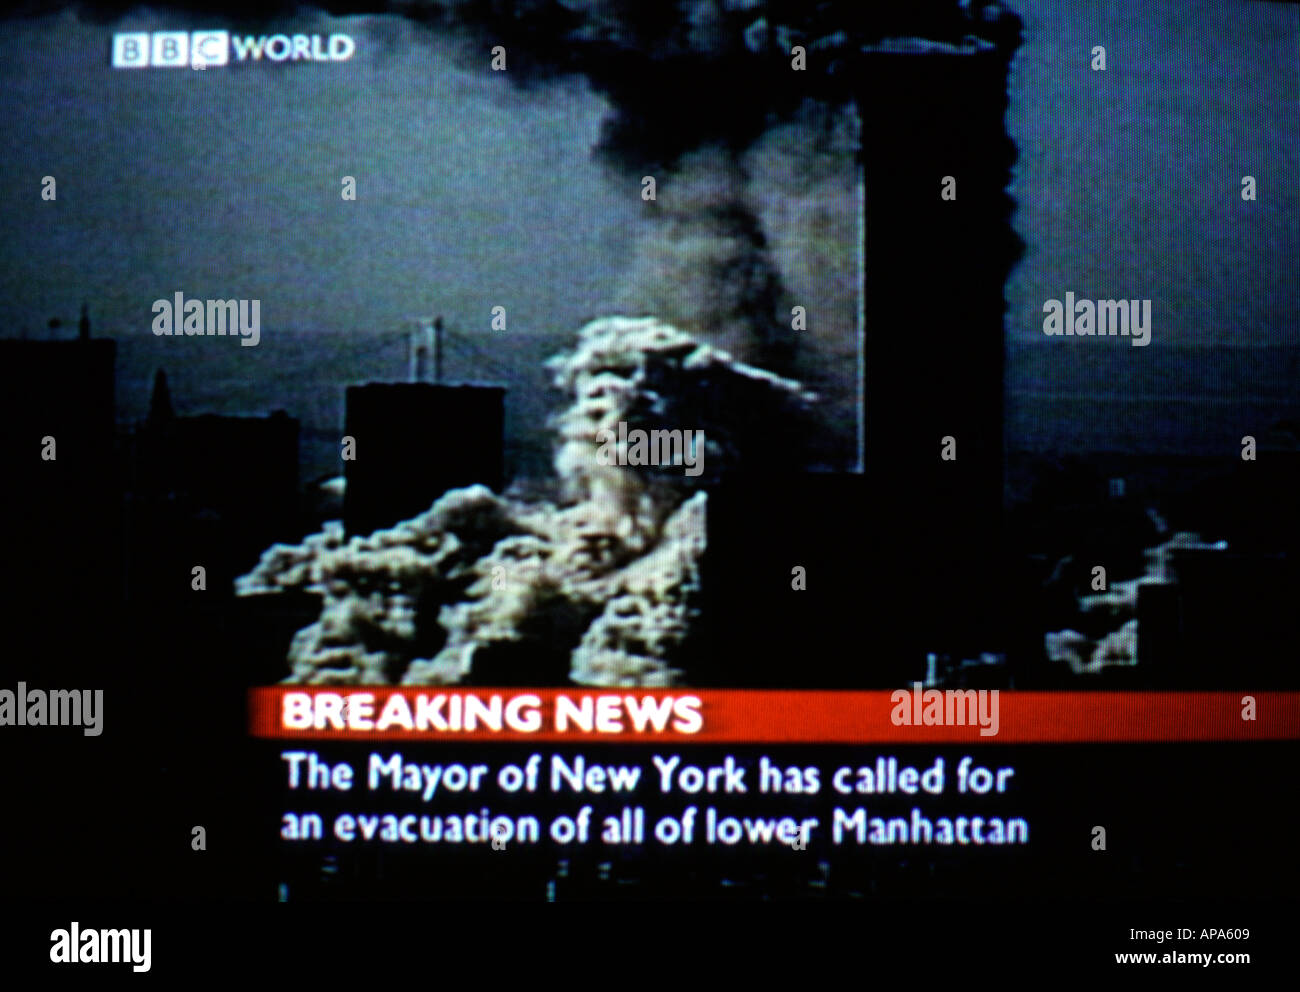 Captura de pantalla de la cobertura en directo de la BBC de los acontecimientos que tuvieron lugar en Nueva York durante 9/11, en los que aviones secuestrados se estrellaron contra las torres gemelas el 2001 de septiembre Foto de stock